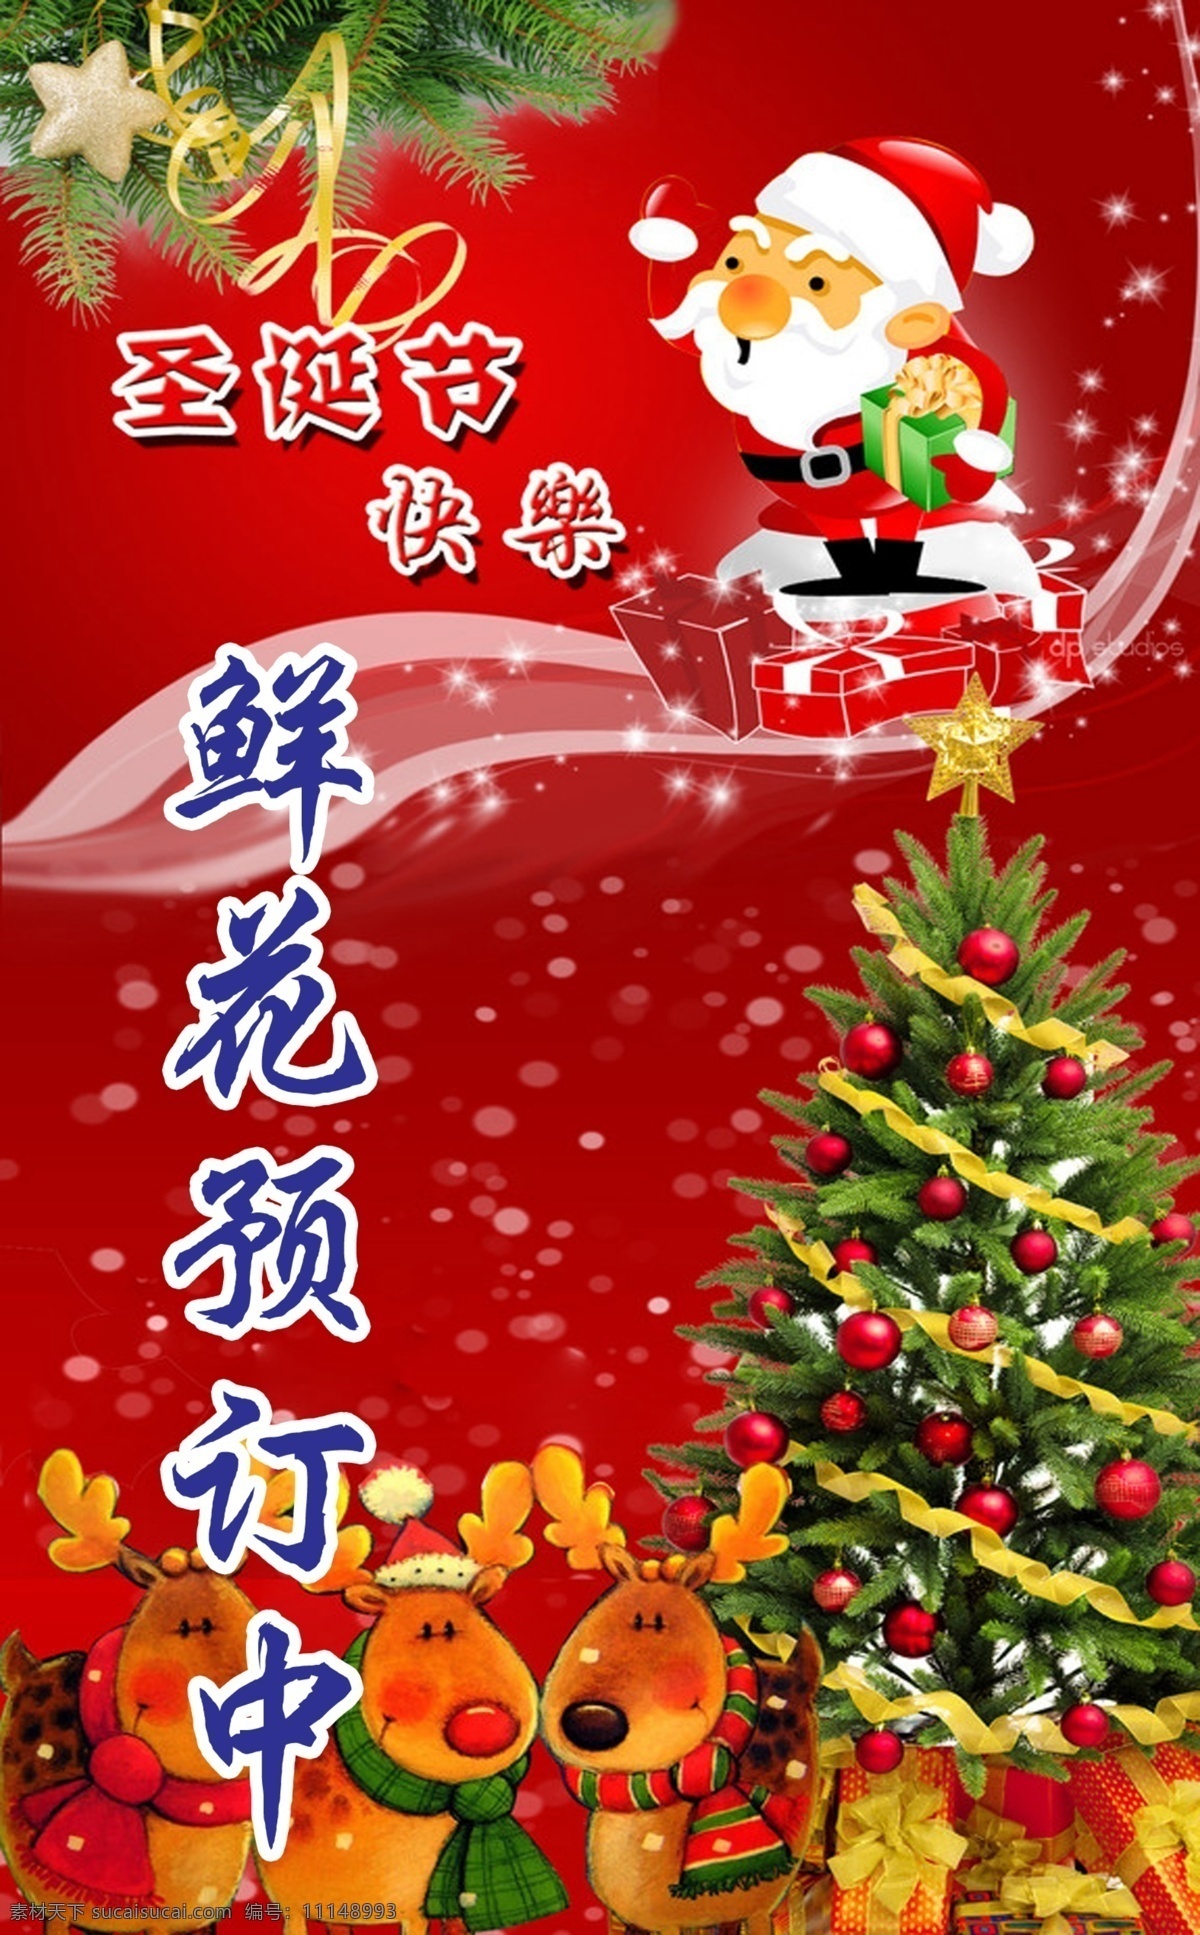 快乐 圣诞节 海报 快乐圣诞节 鲜花预定中 圣诞老人 圣诞树 广告设计模板 源文件